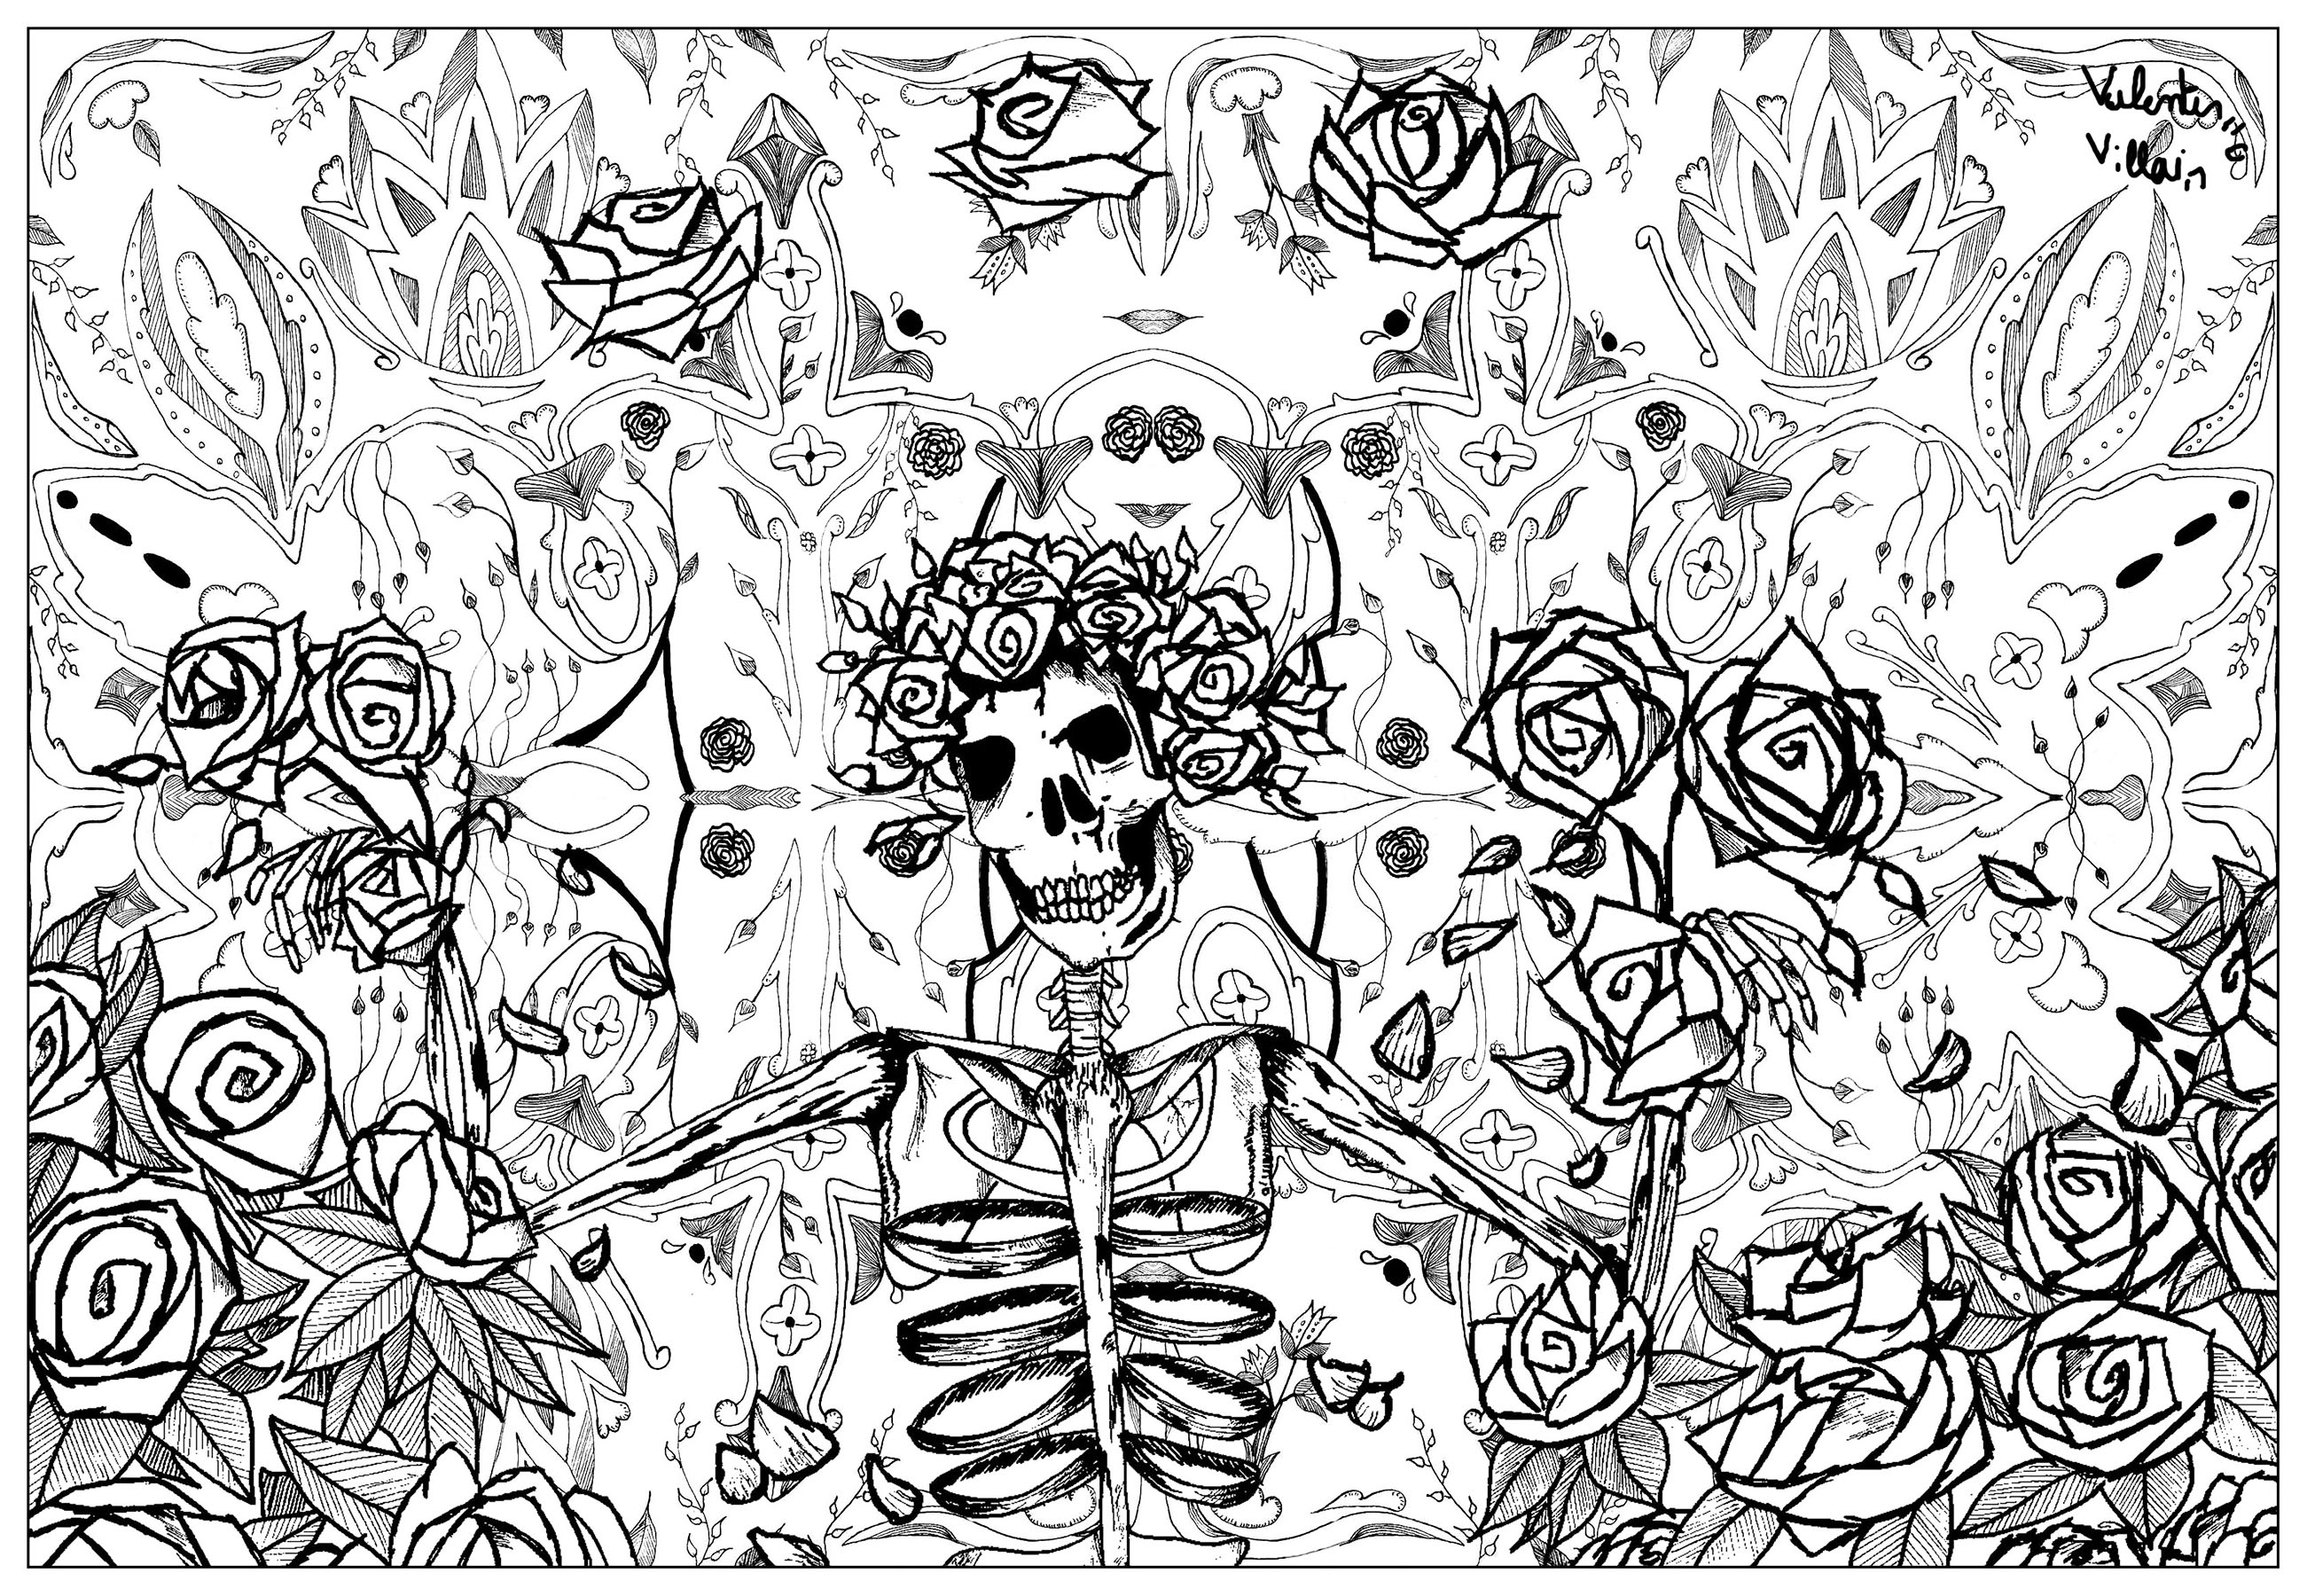 Ilustração original inspirada nos visuais da banda de rock americana Grateful Dead. Grateful dead é considerado um dos principais representantes do movimento psicadélico.Esta página para colorir é perfeita para os amantes da música e do psicadelismo. Permitir-lhe-á mergulhar num universo único e desenvolver a sua criatividade, Artista : Valentin